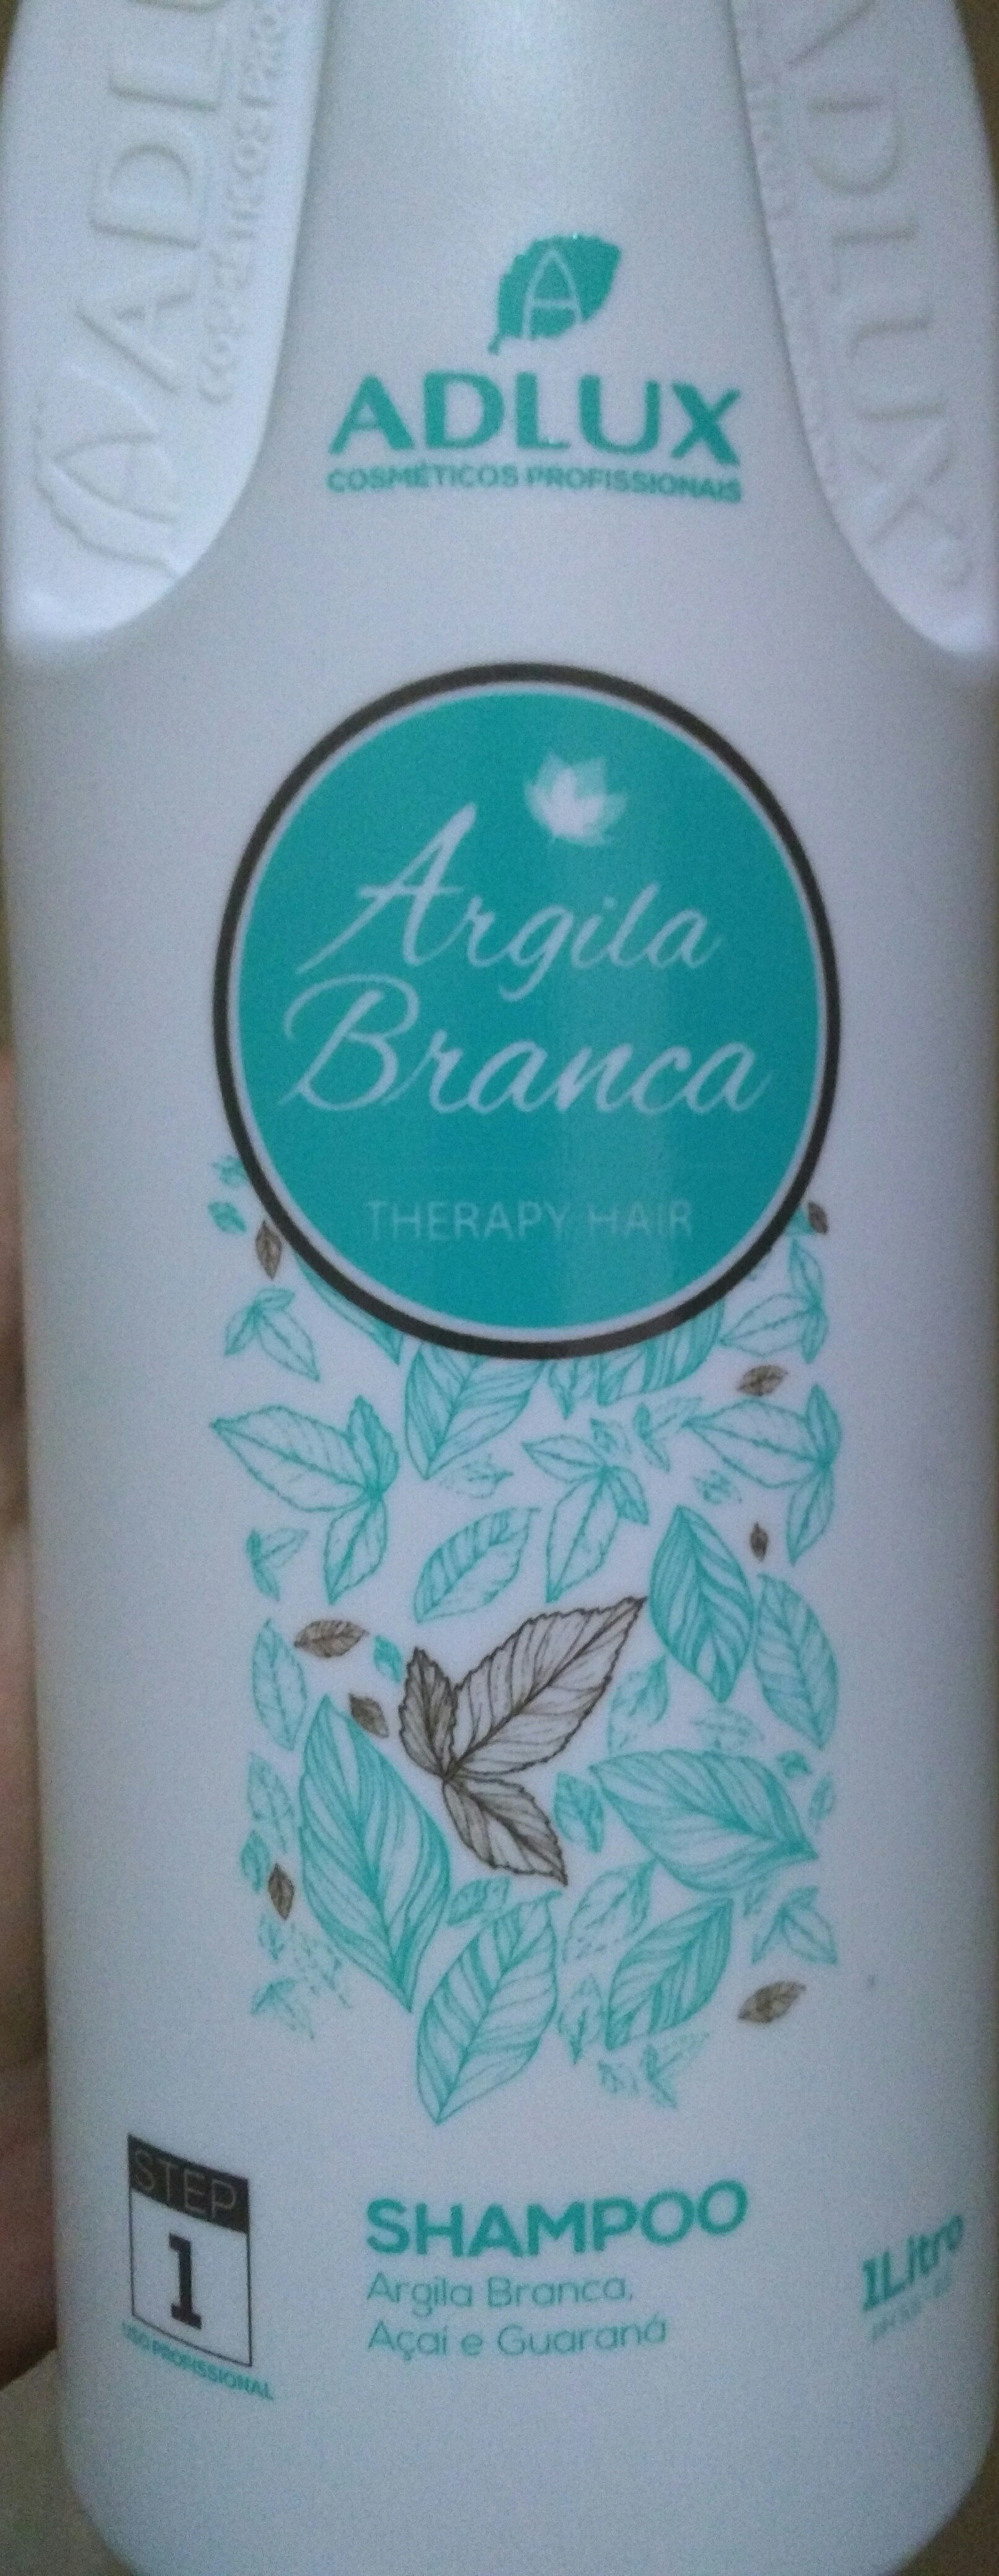 SHAMPOO ARGILA BRANCO - Produktas - pt